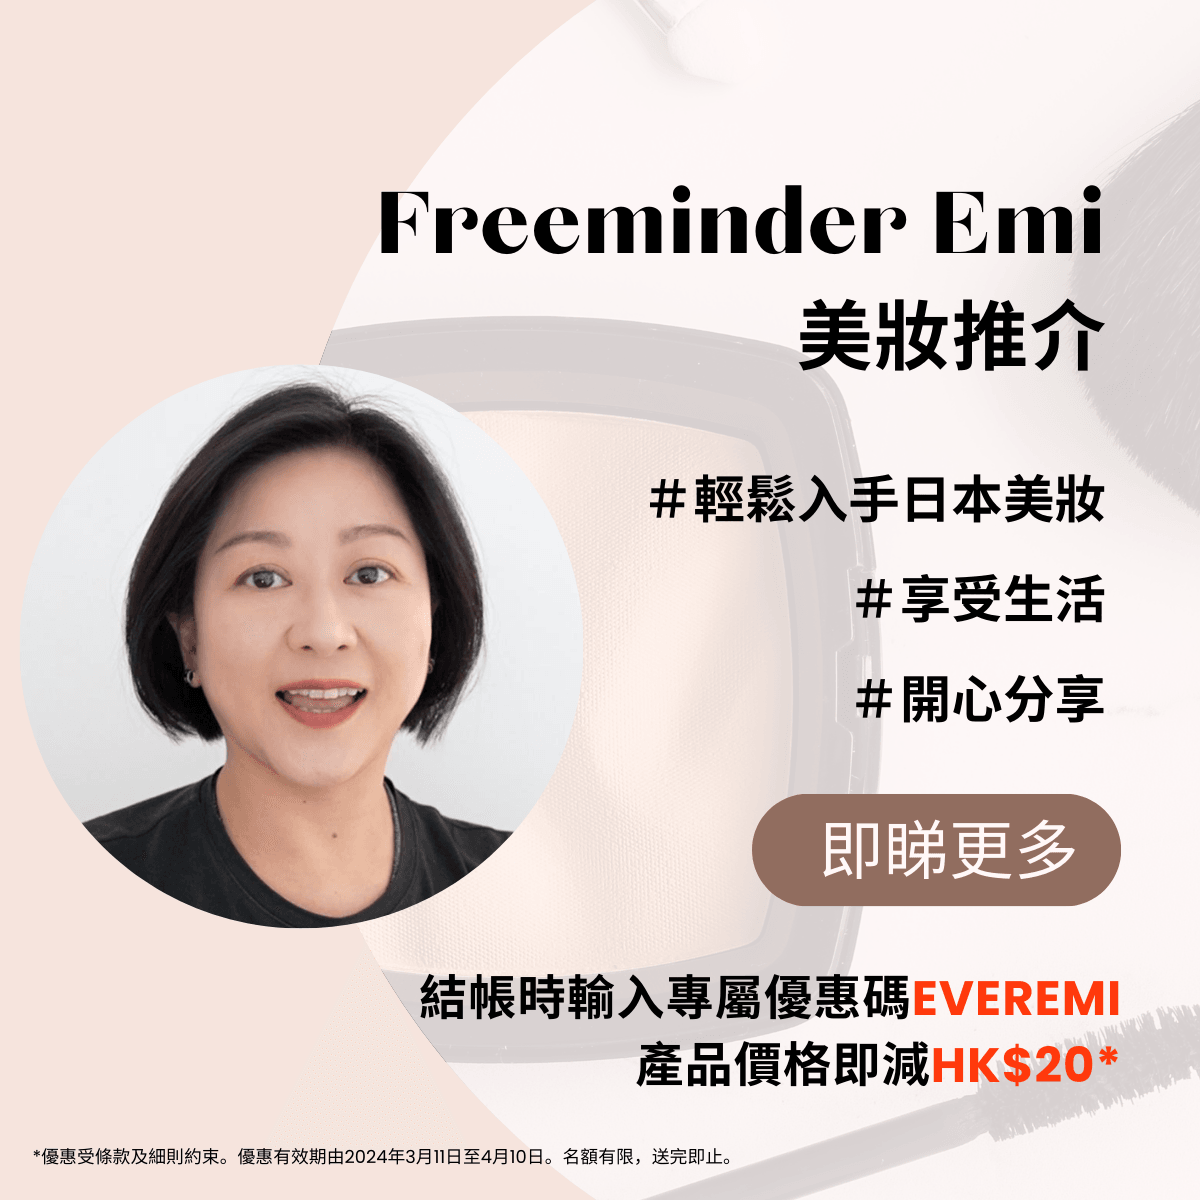 Freeminder Emi 實用化妝小物推介